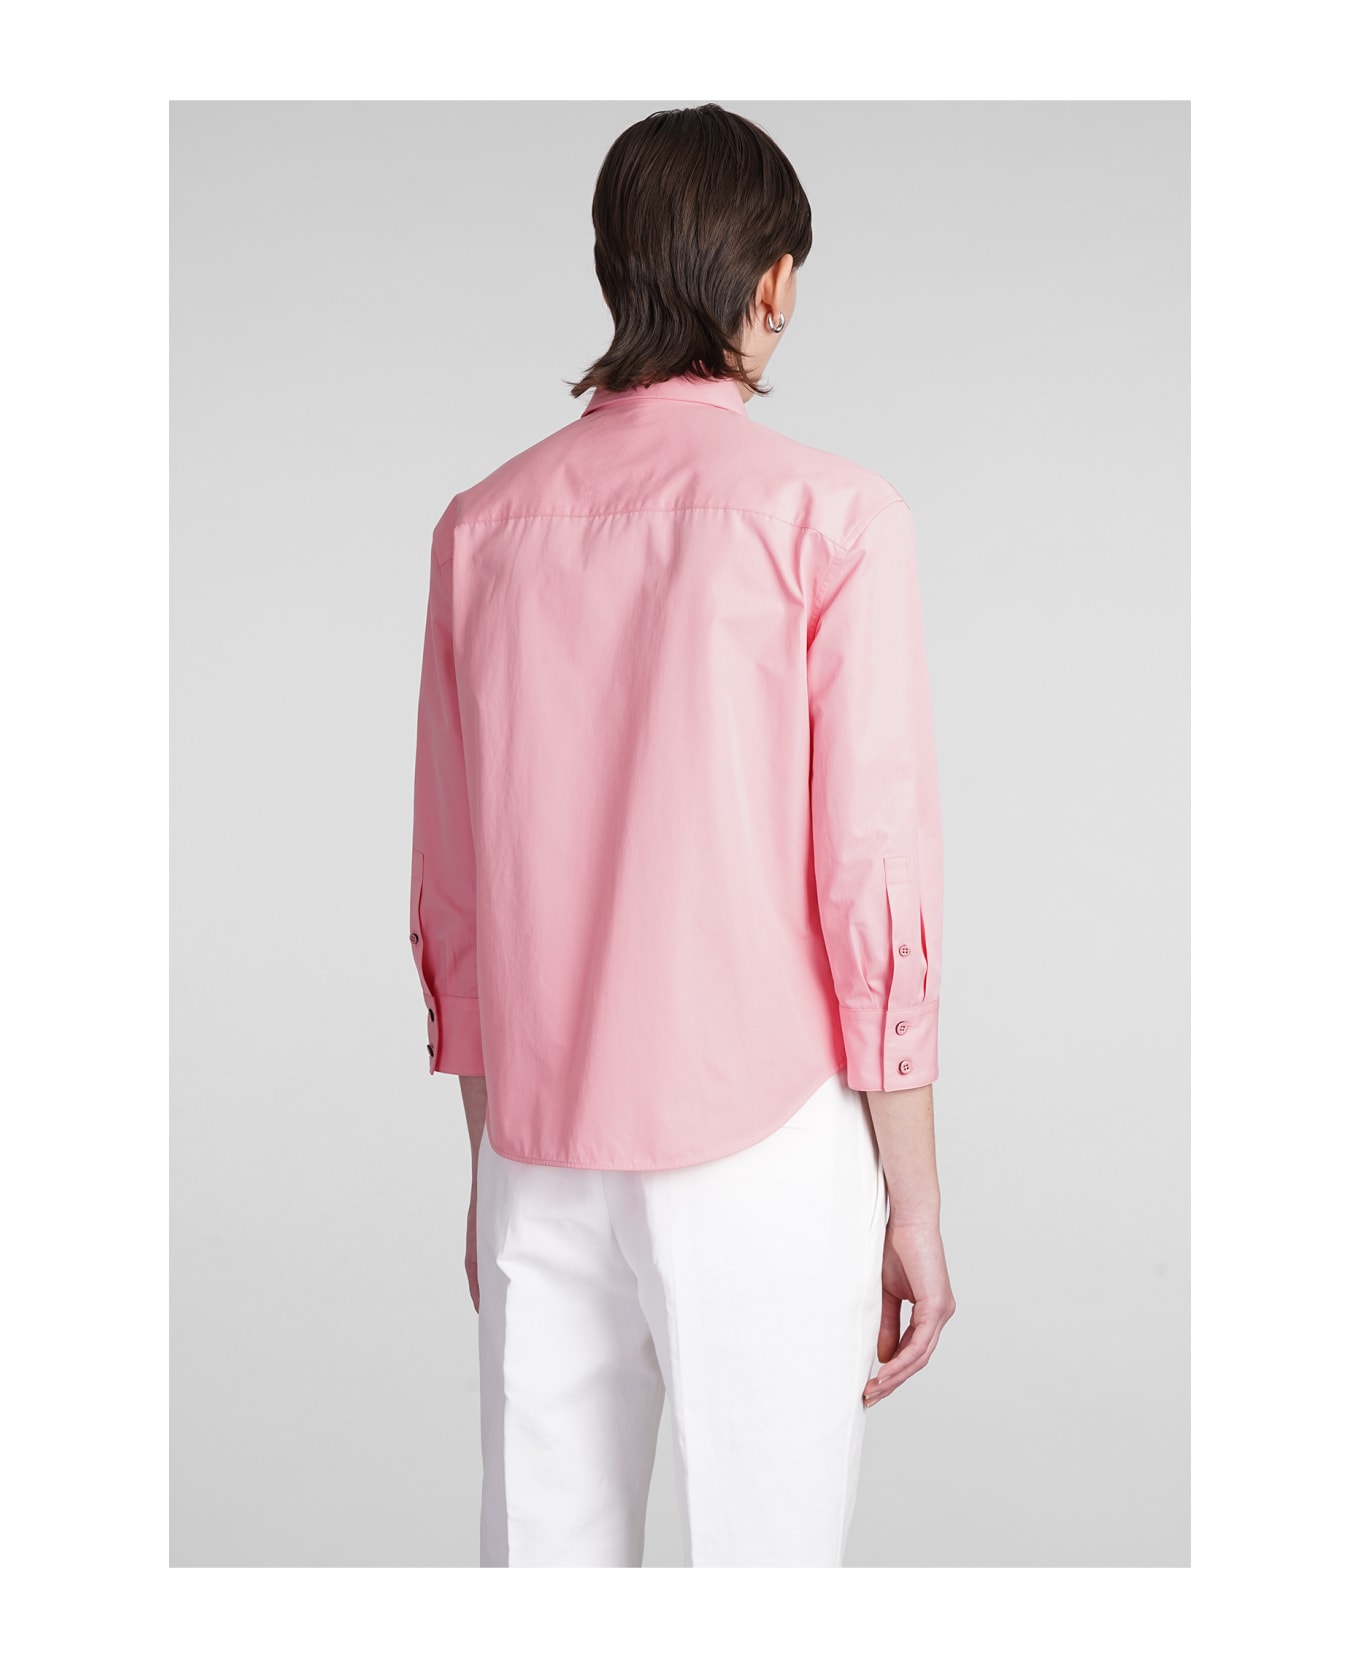 Jil Sander Shirt In Rose-pink Cotton - rose-pink シャツ